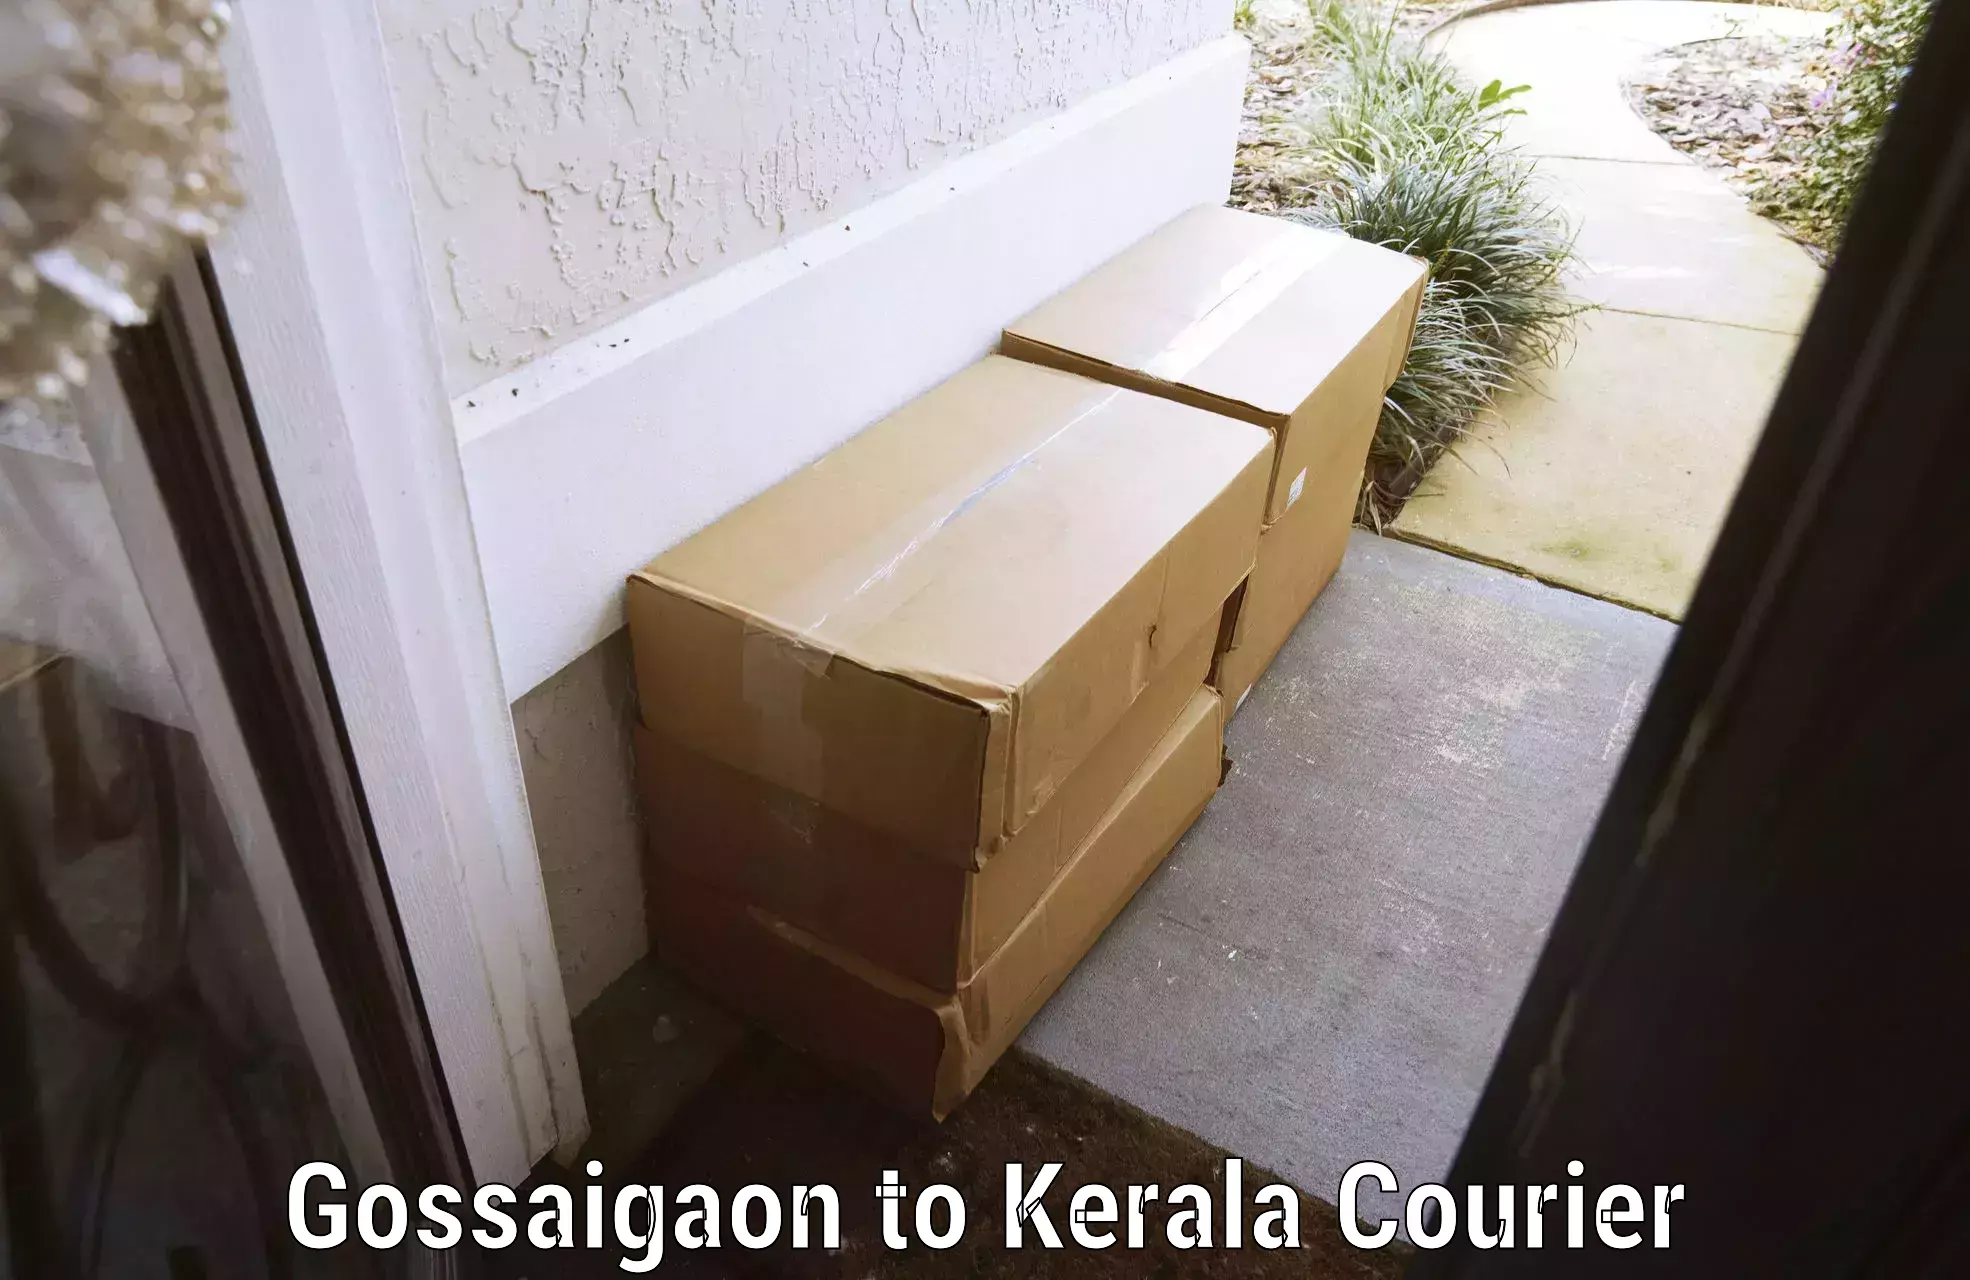 Hassle-free luggage shipping Gossaigaon to Puthukkad